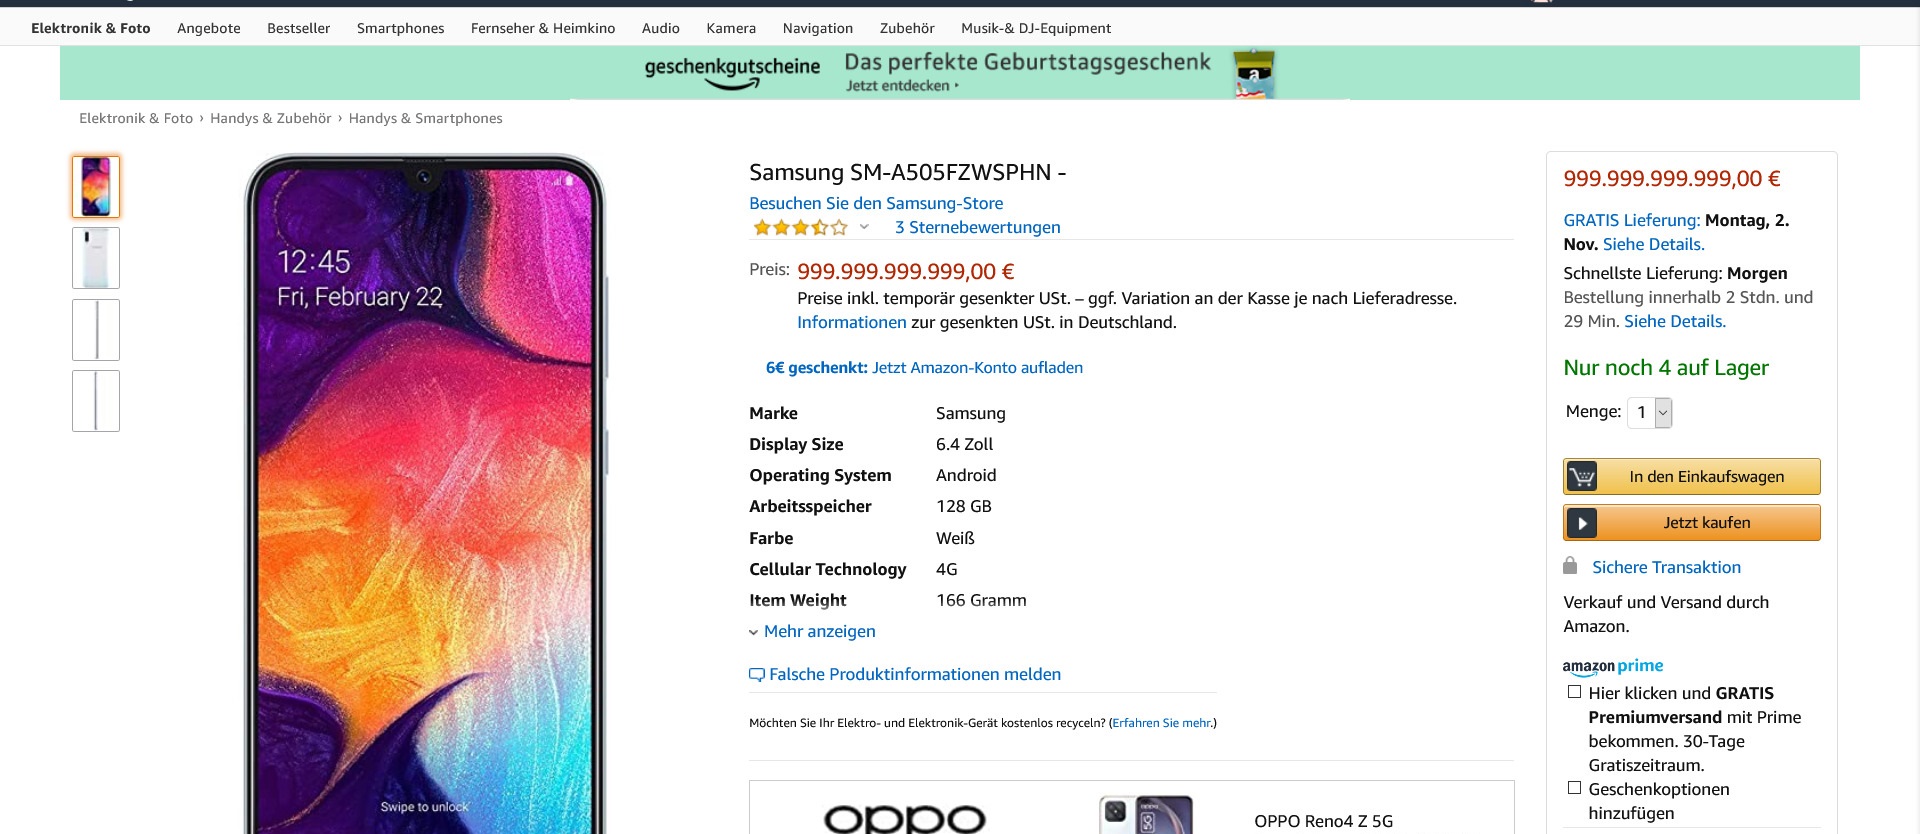 Samsung-SM-A505FZWSPHN für 999.999.999.999,00€